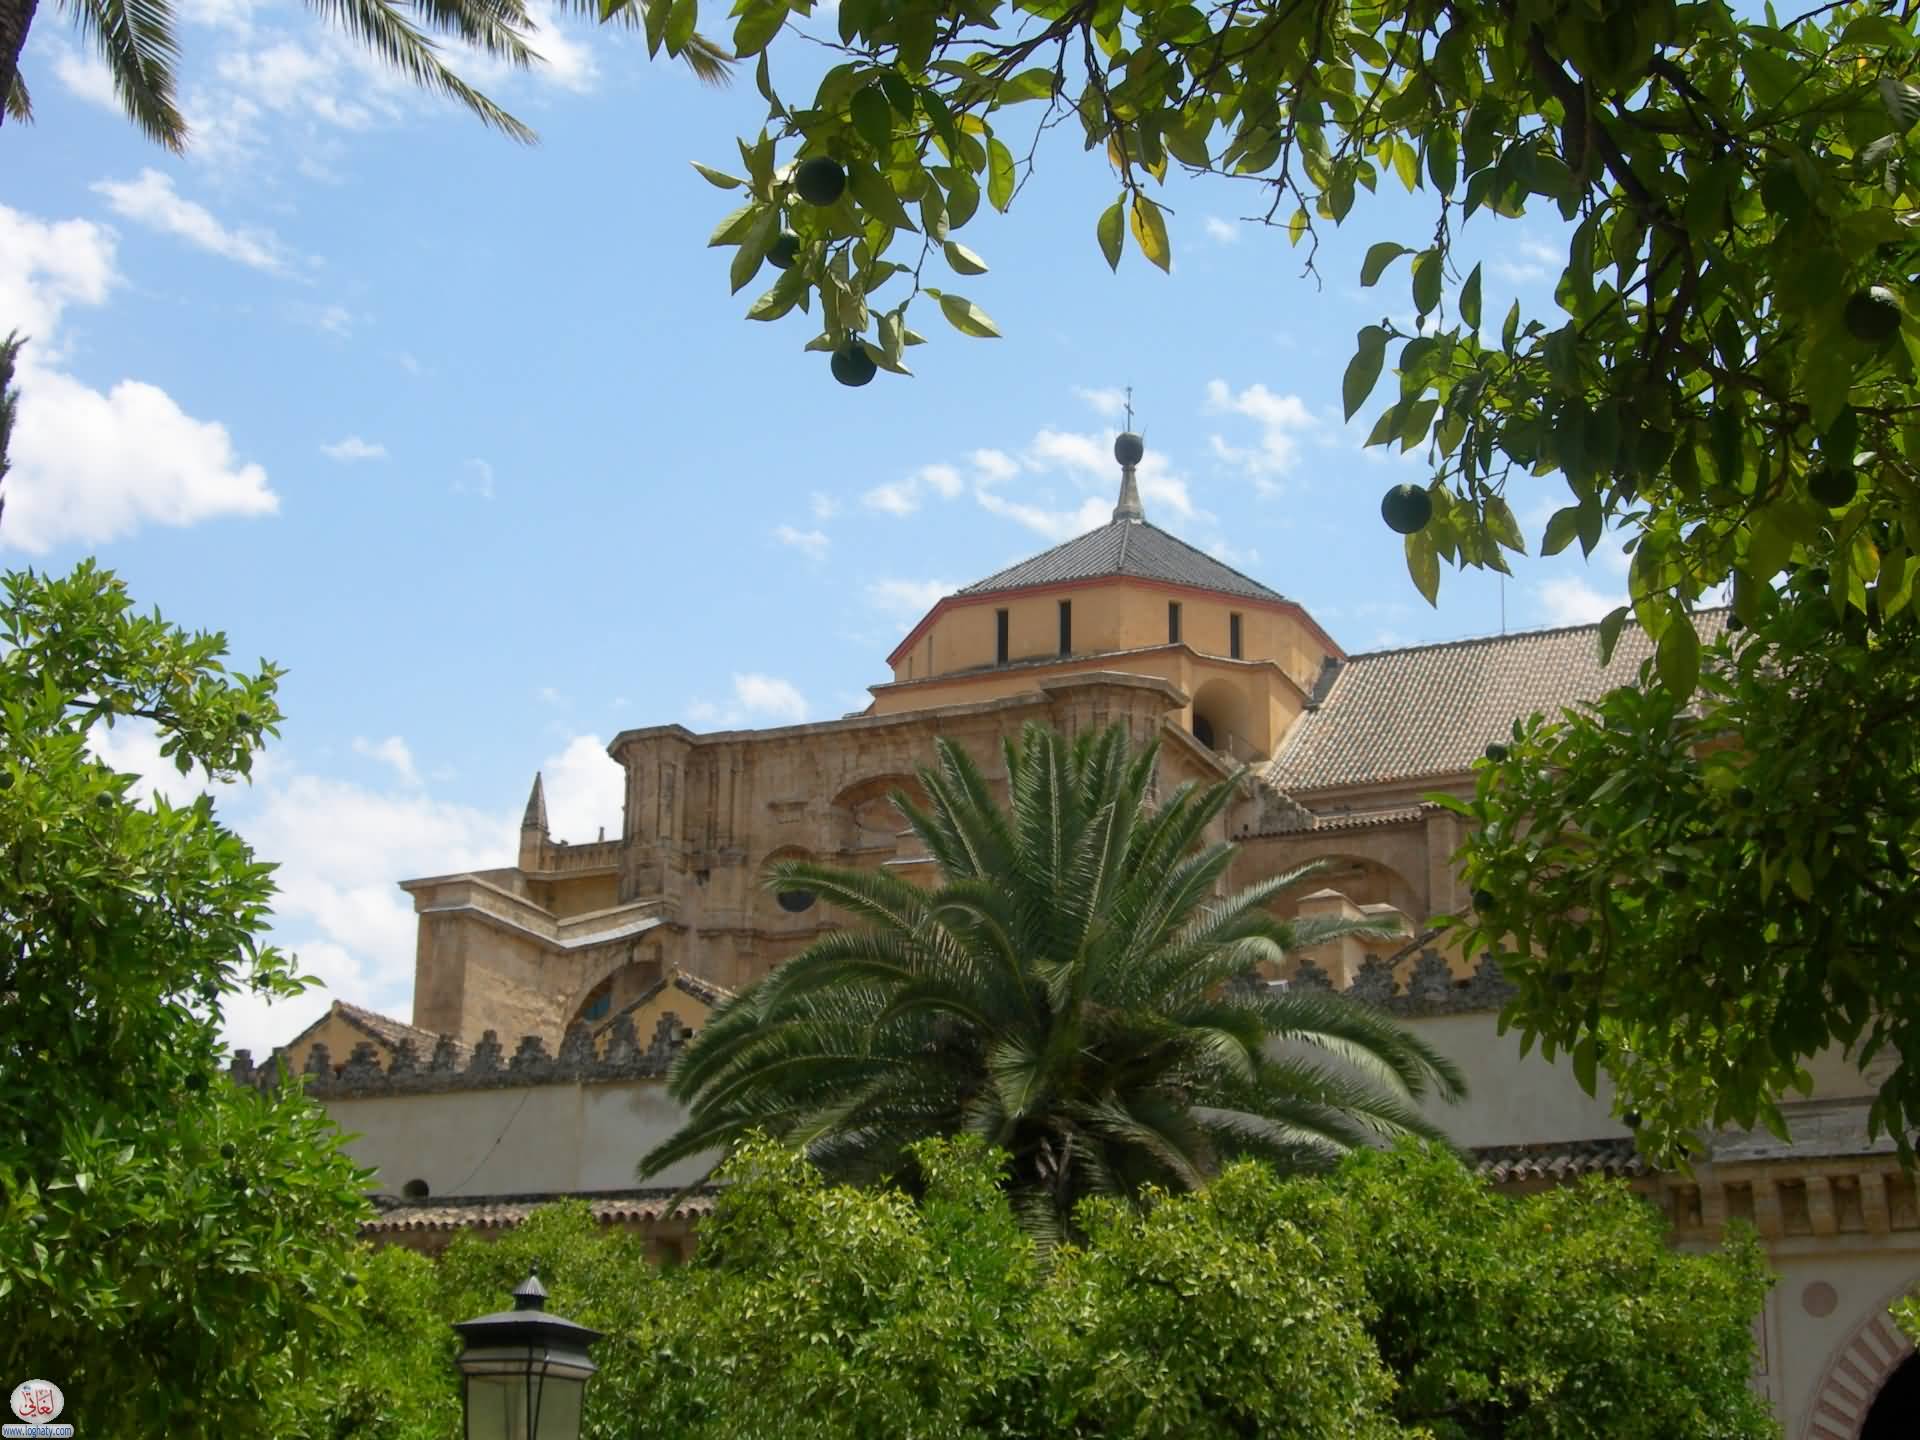 The Mezquita, Cordoba, Spain